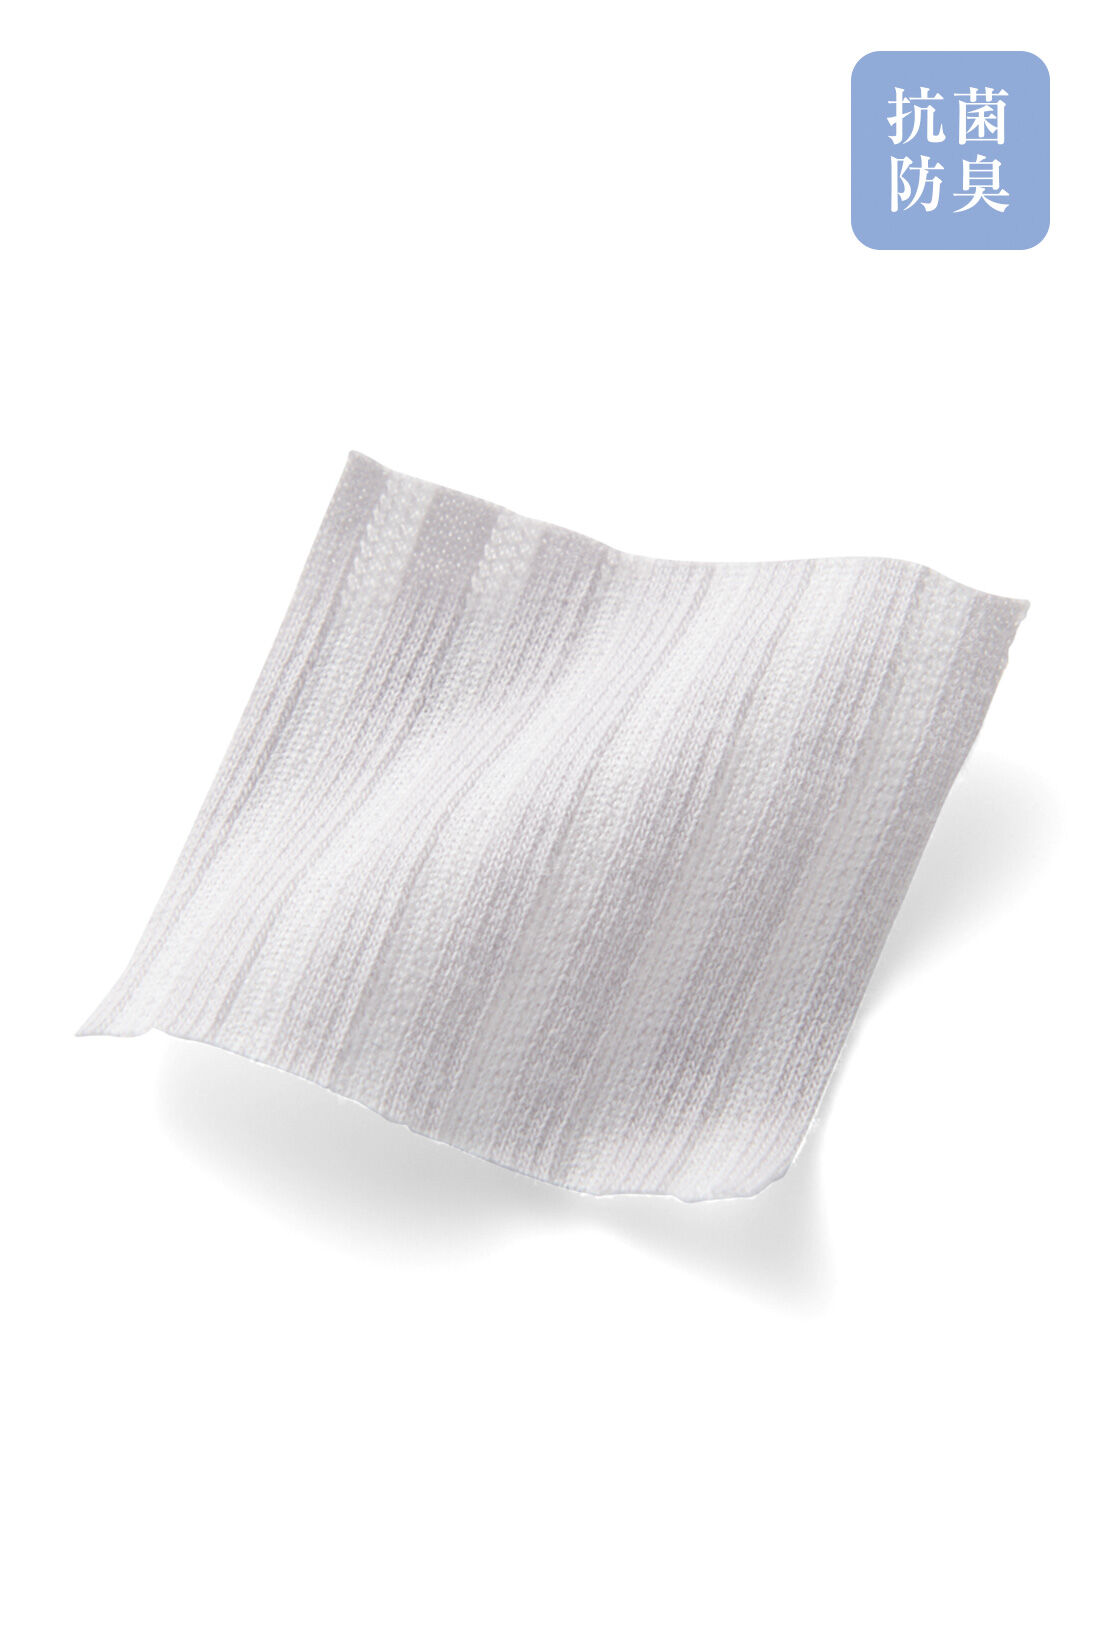 IEDIT[イディット]　抗菌防臭がうれしい きちんとシャツ見えしてらくちん クレリック仕立ての美ノビブラウスの会|ストライプ風の織り柄カットソーは抗菌防臭機能付き。お家で洗えるイージーケア。